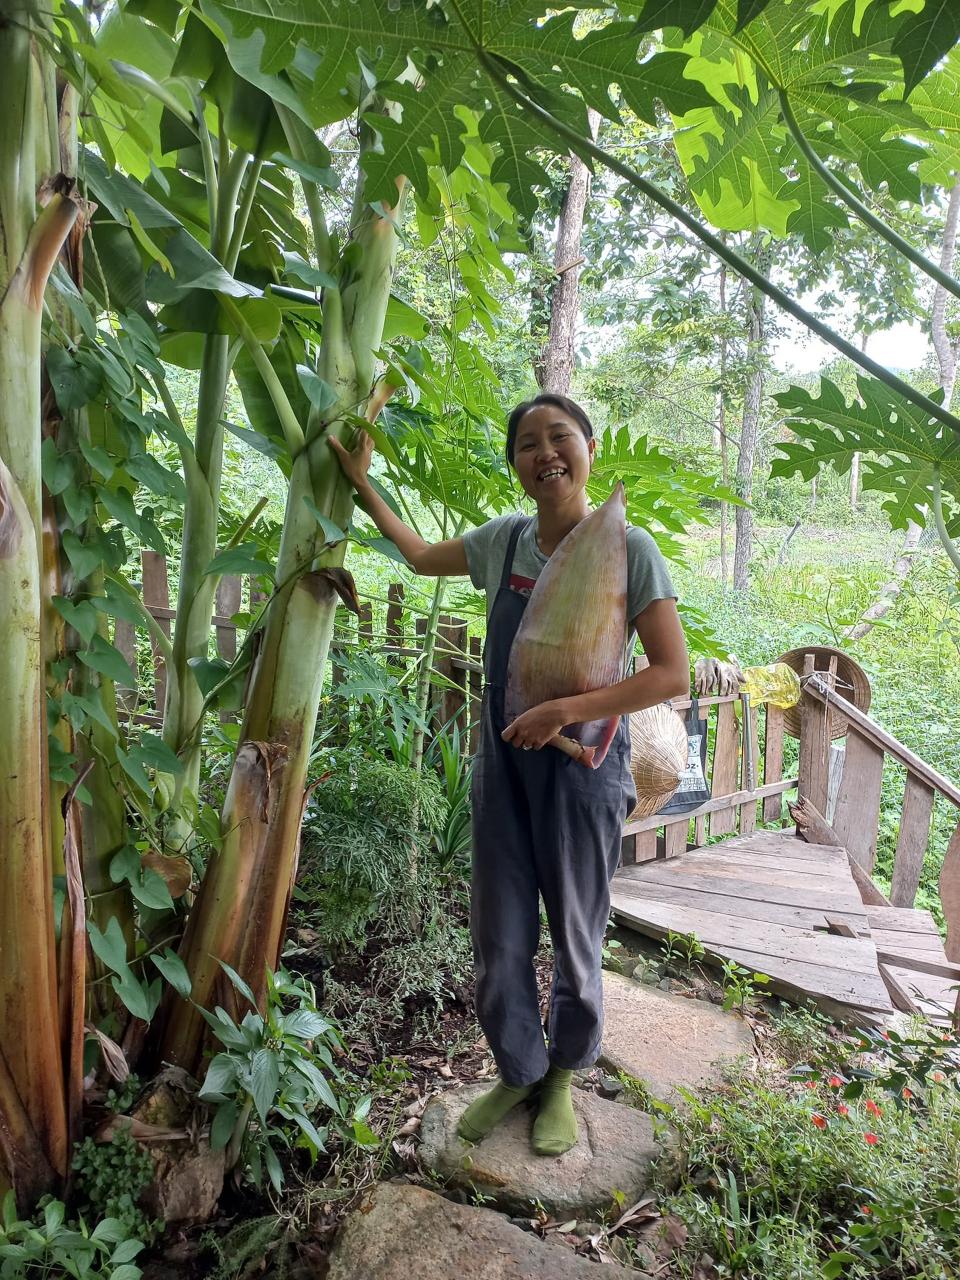 Vợ Việt - chồng Hà Lan bỏ phố về rừng ở nhà gỗ, không dùng bếp điện, tivi - 19